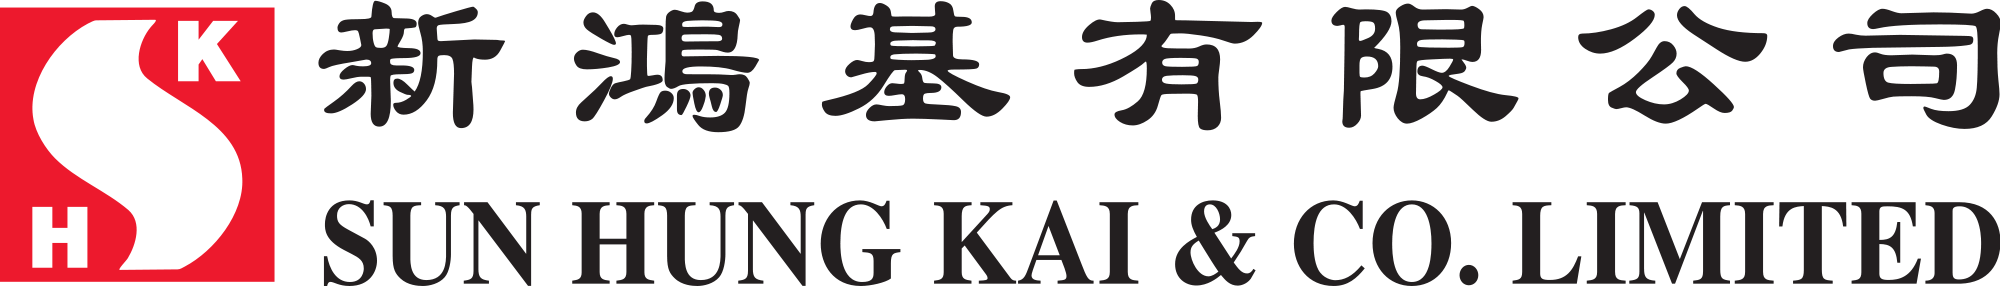 Sun Hung Kai Co Brand Logo